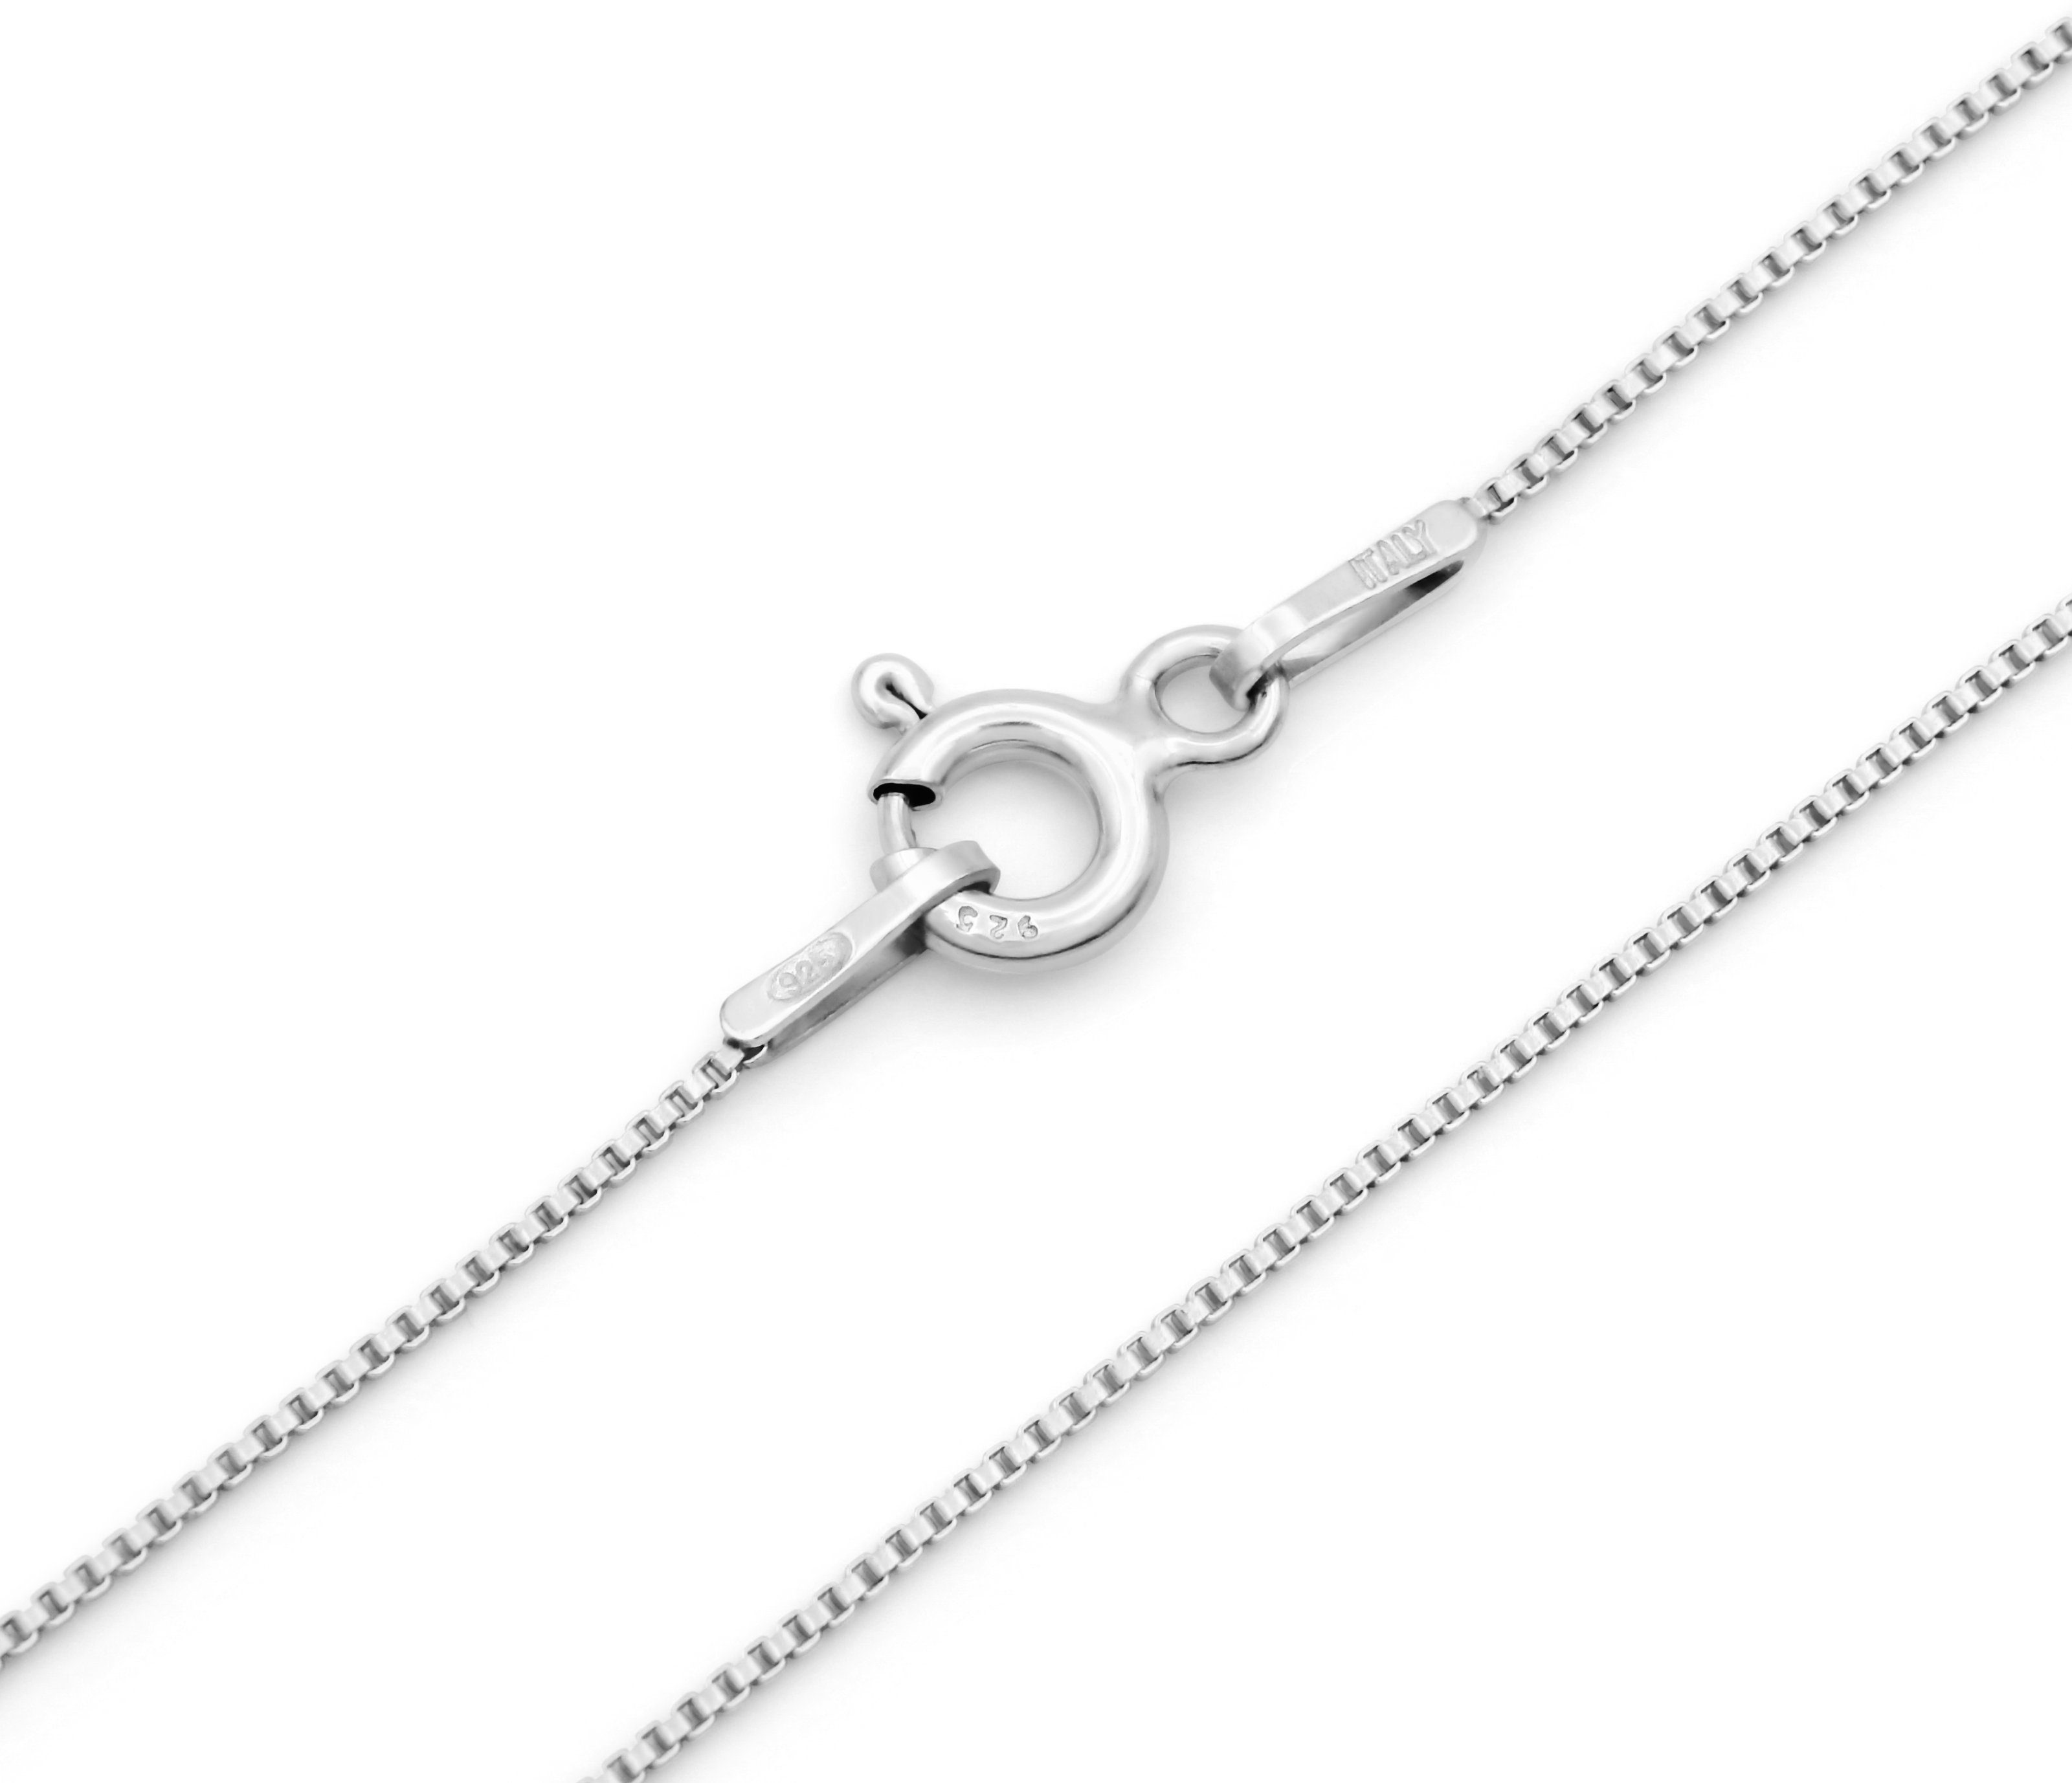 Kauf-mich-weg by Bella T Silberkette Venezianerkette 925 Sterling Silber rhodiniert 0,7mm breit, Länge wählbar 40 - 55cm